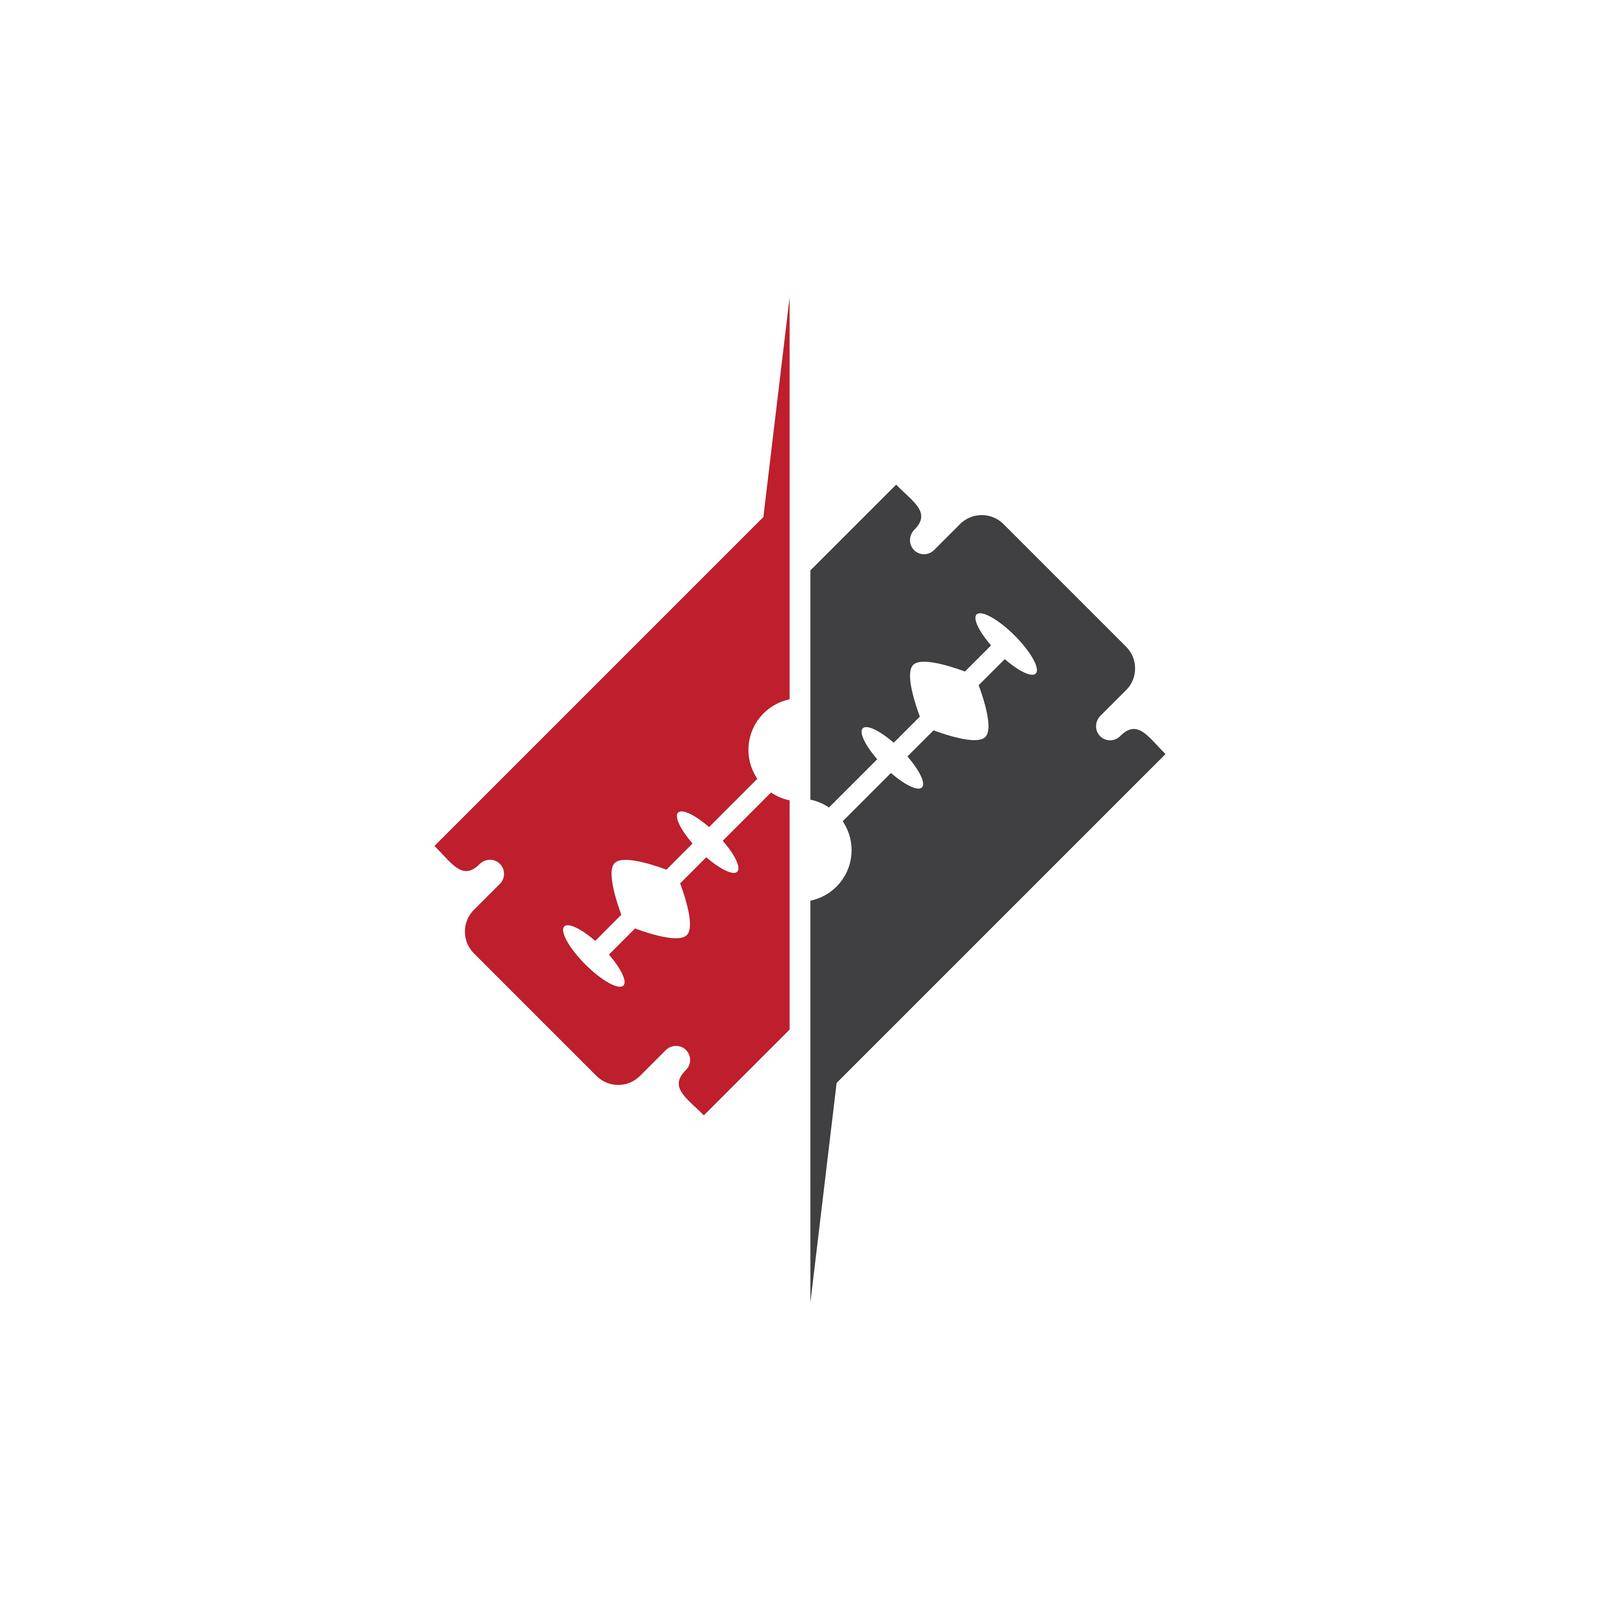 Razor blade logo by awk